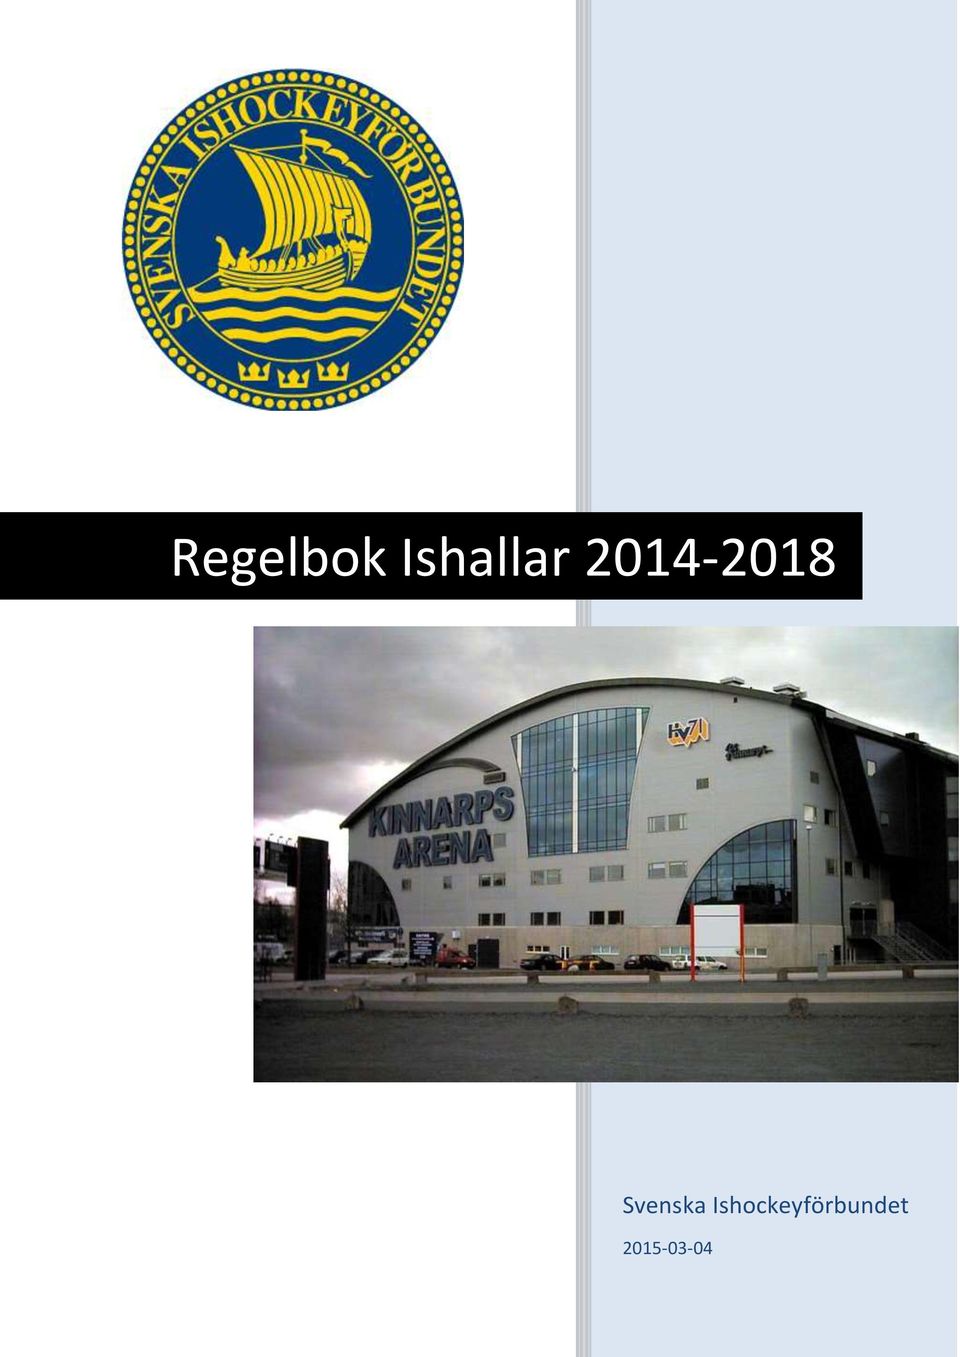 2014-2018